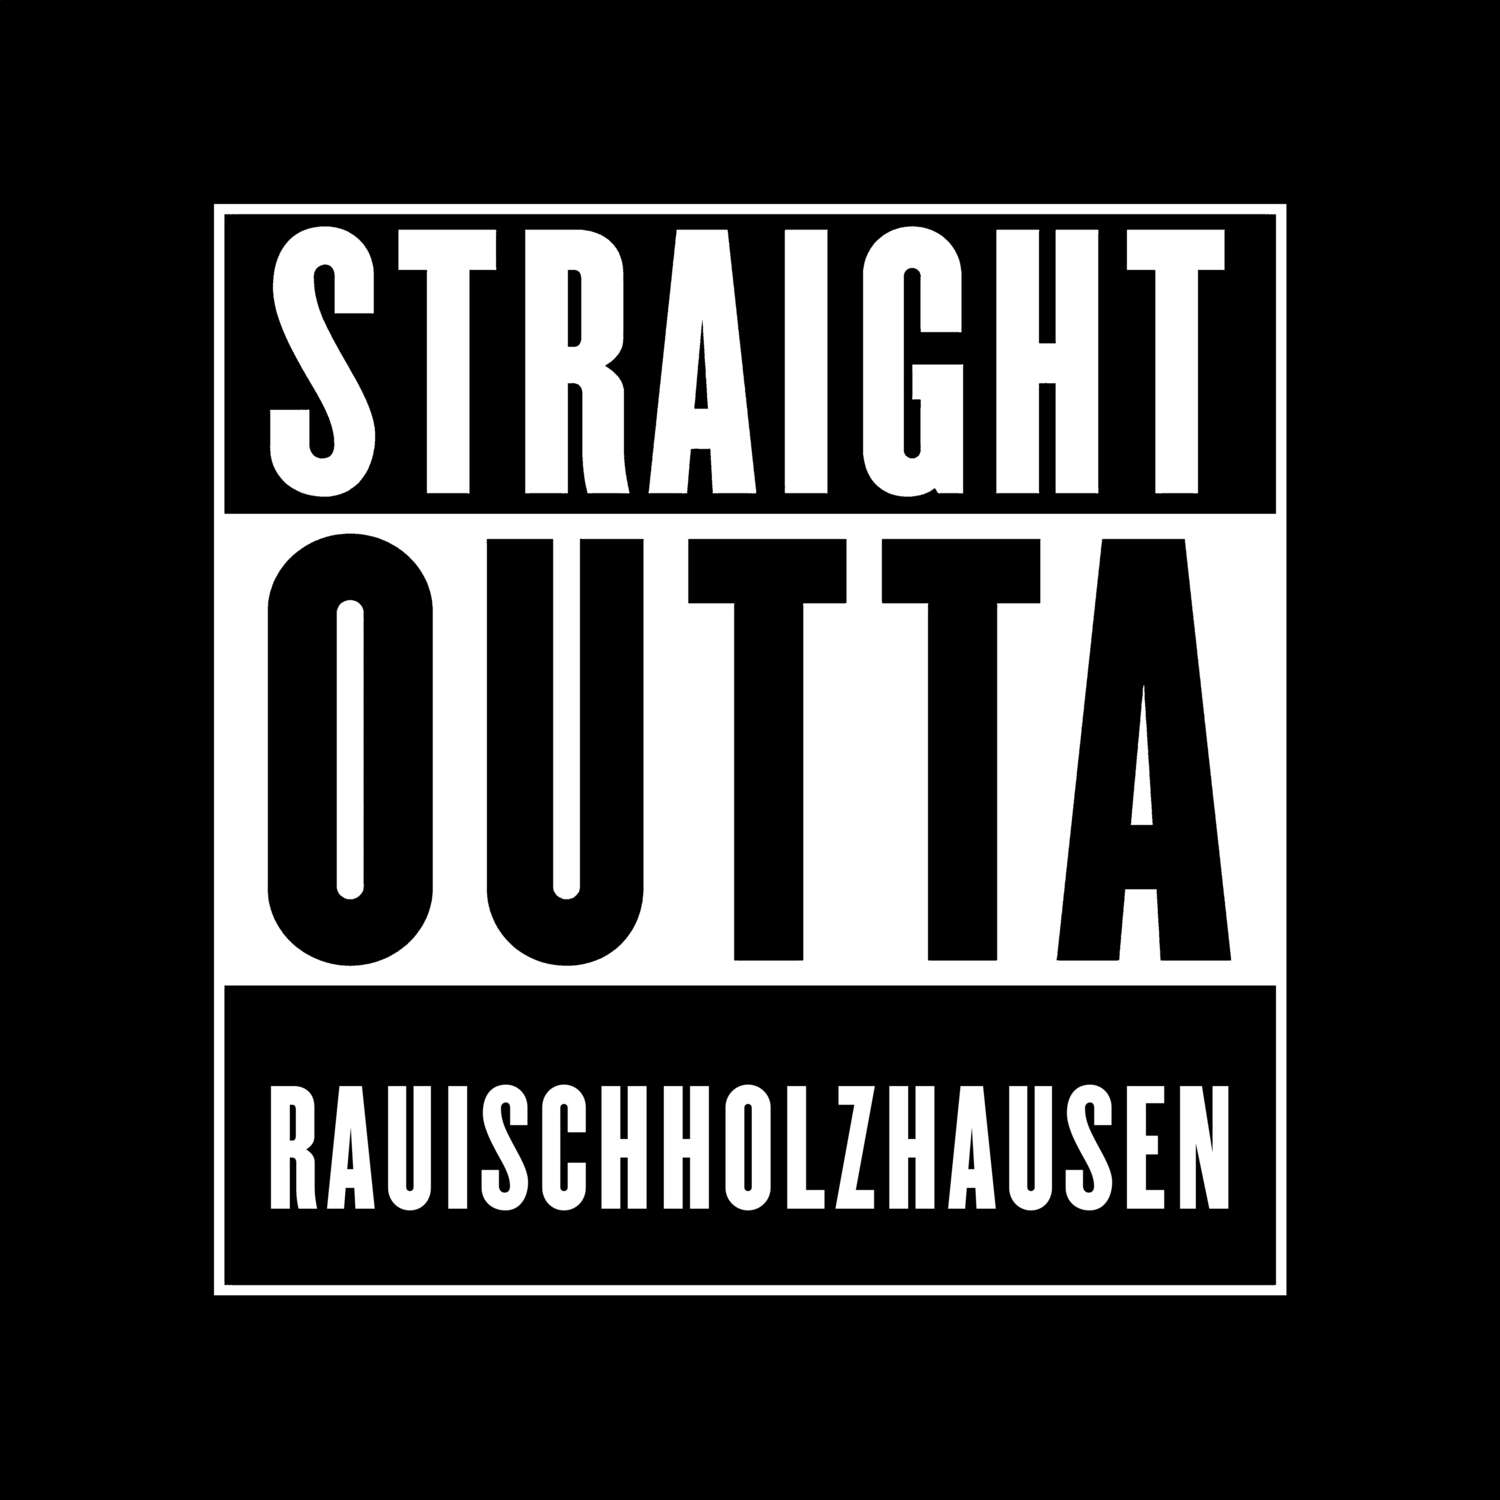 Rauischholzhausen T-Shirt »Straight Outta«